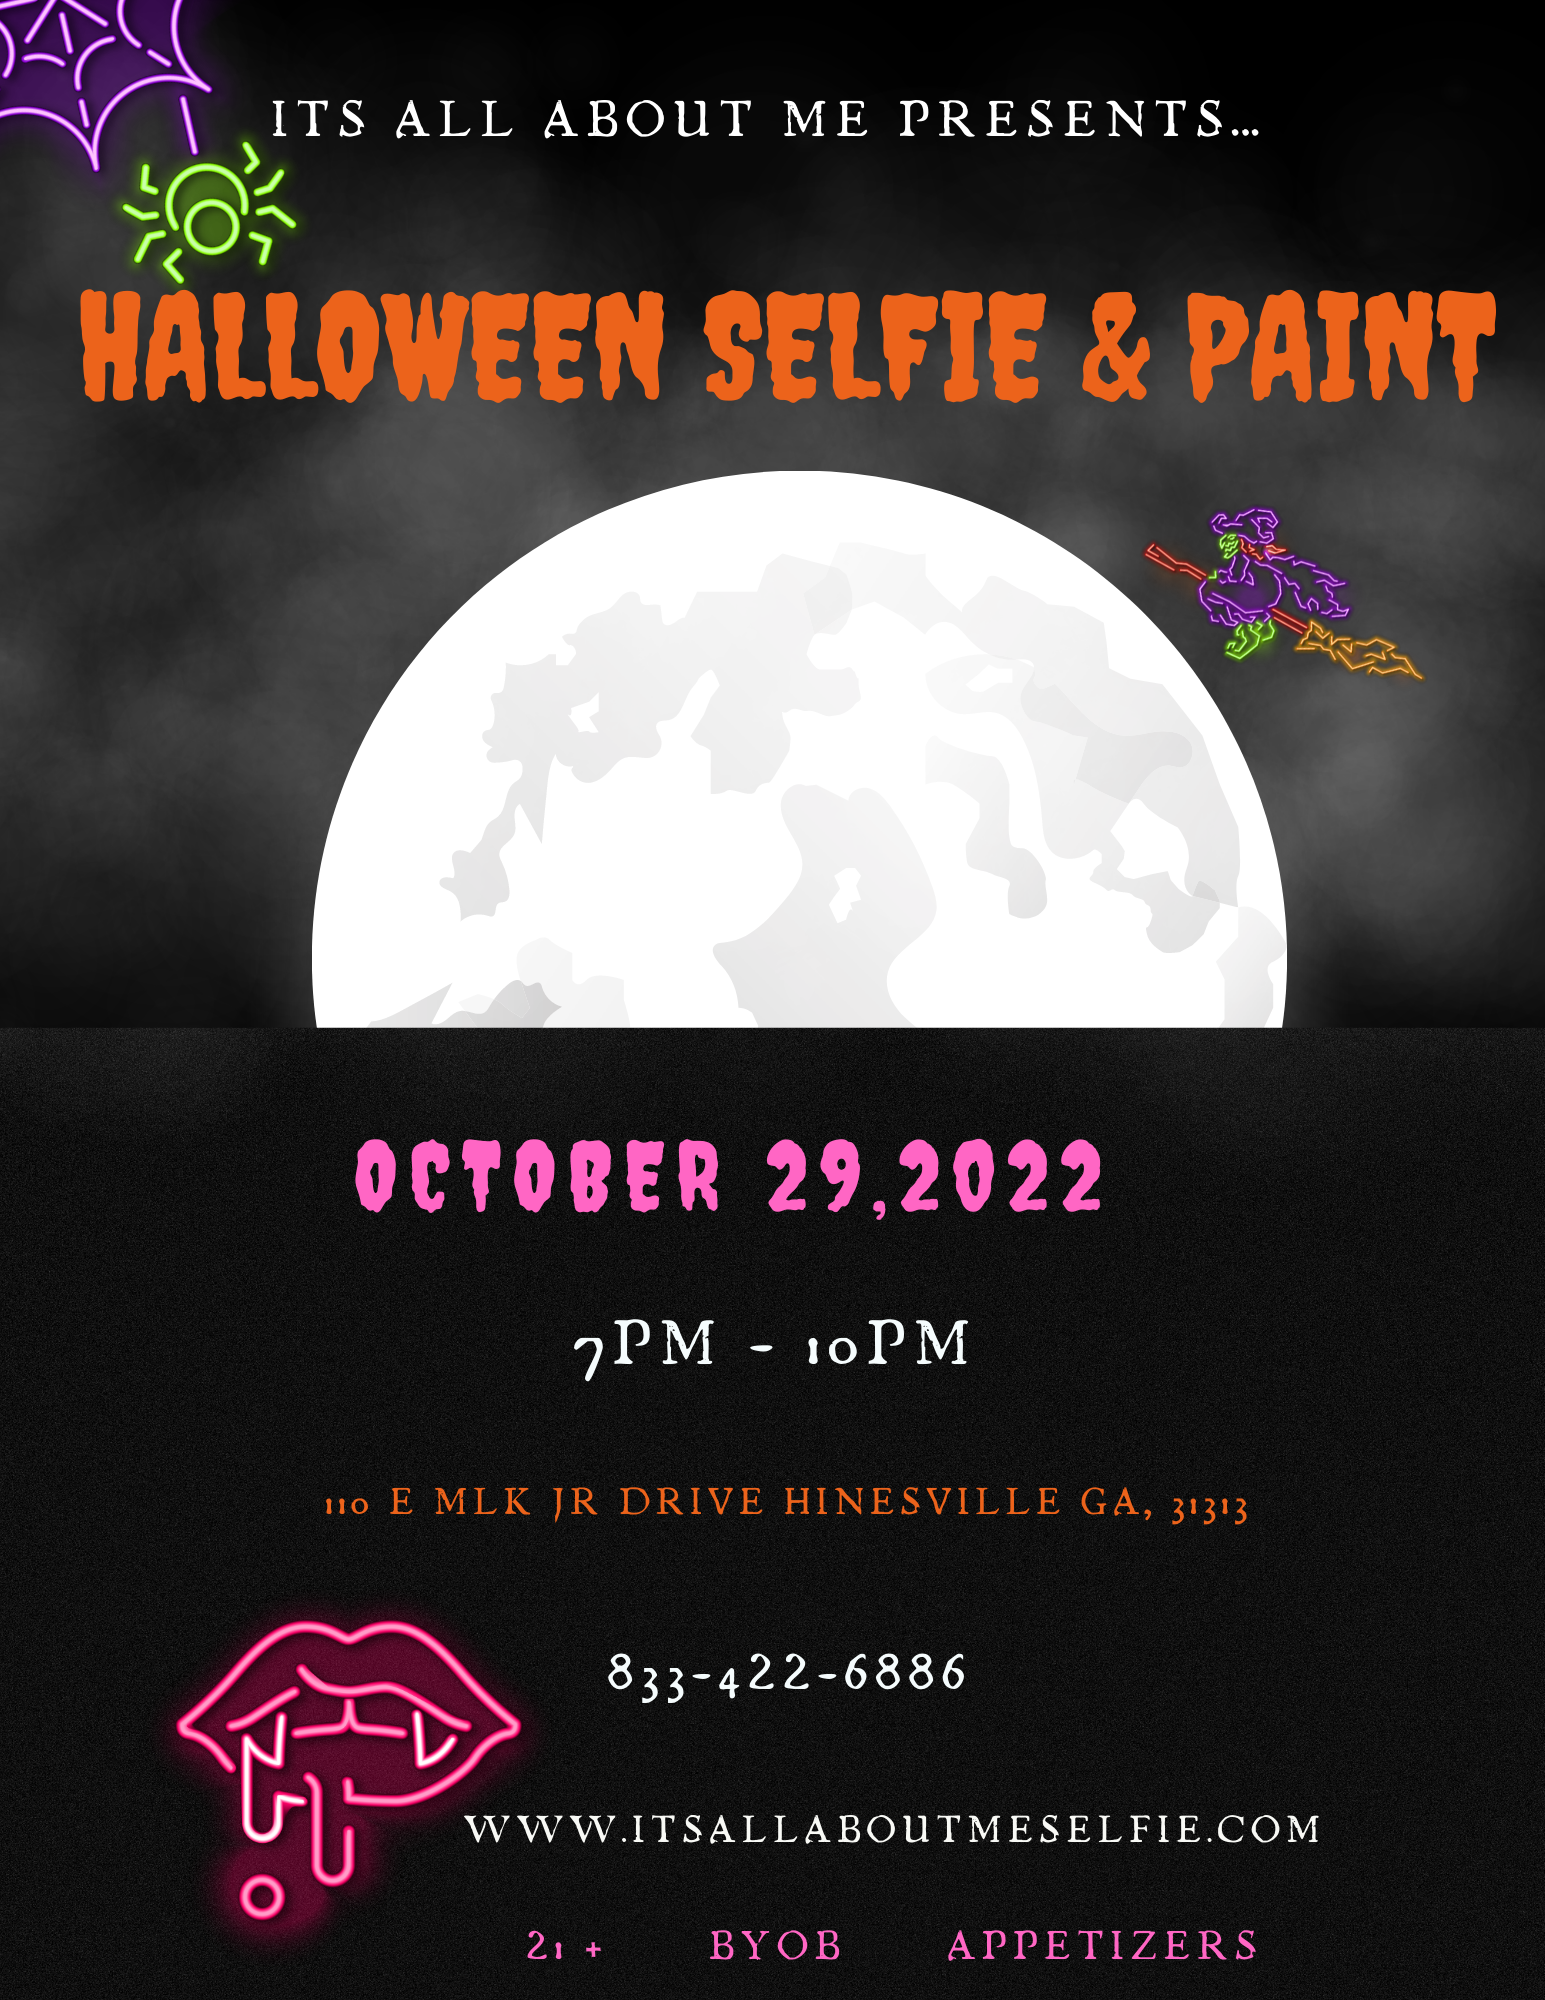 Flyer for Halloween Selfie & Paint Event